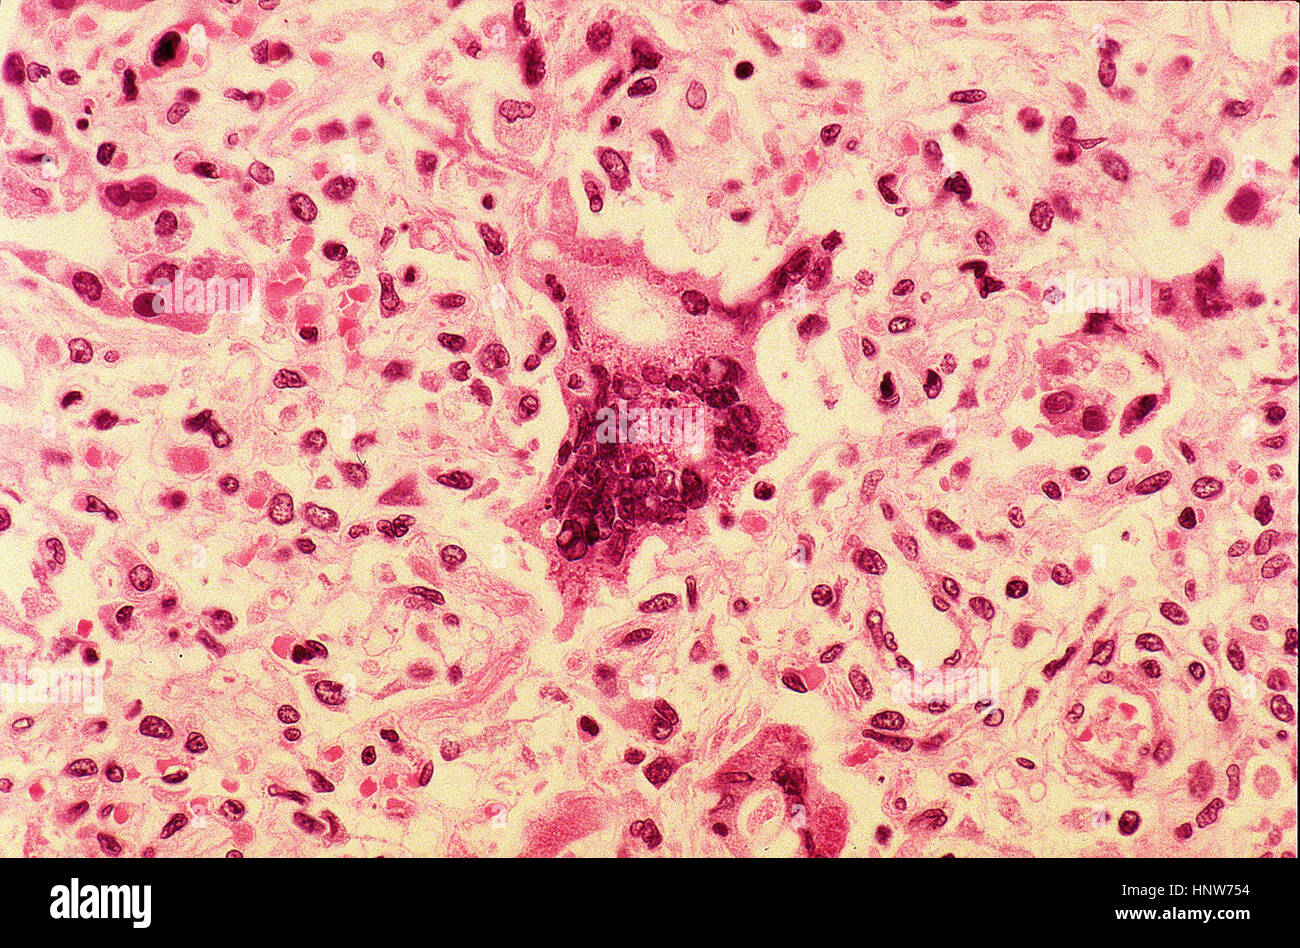 Riesige Zelle unter Lichtmikroskopie Stockfoto